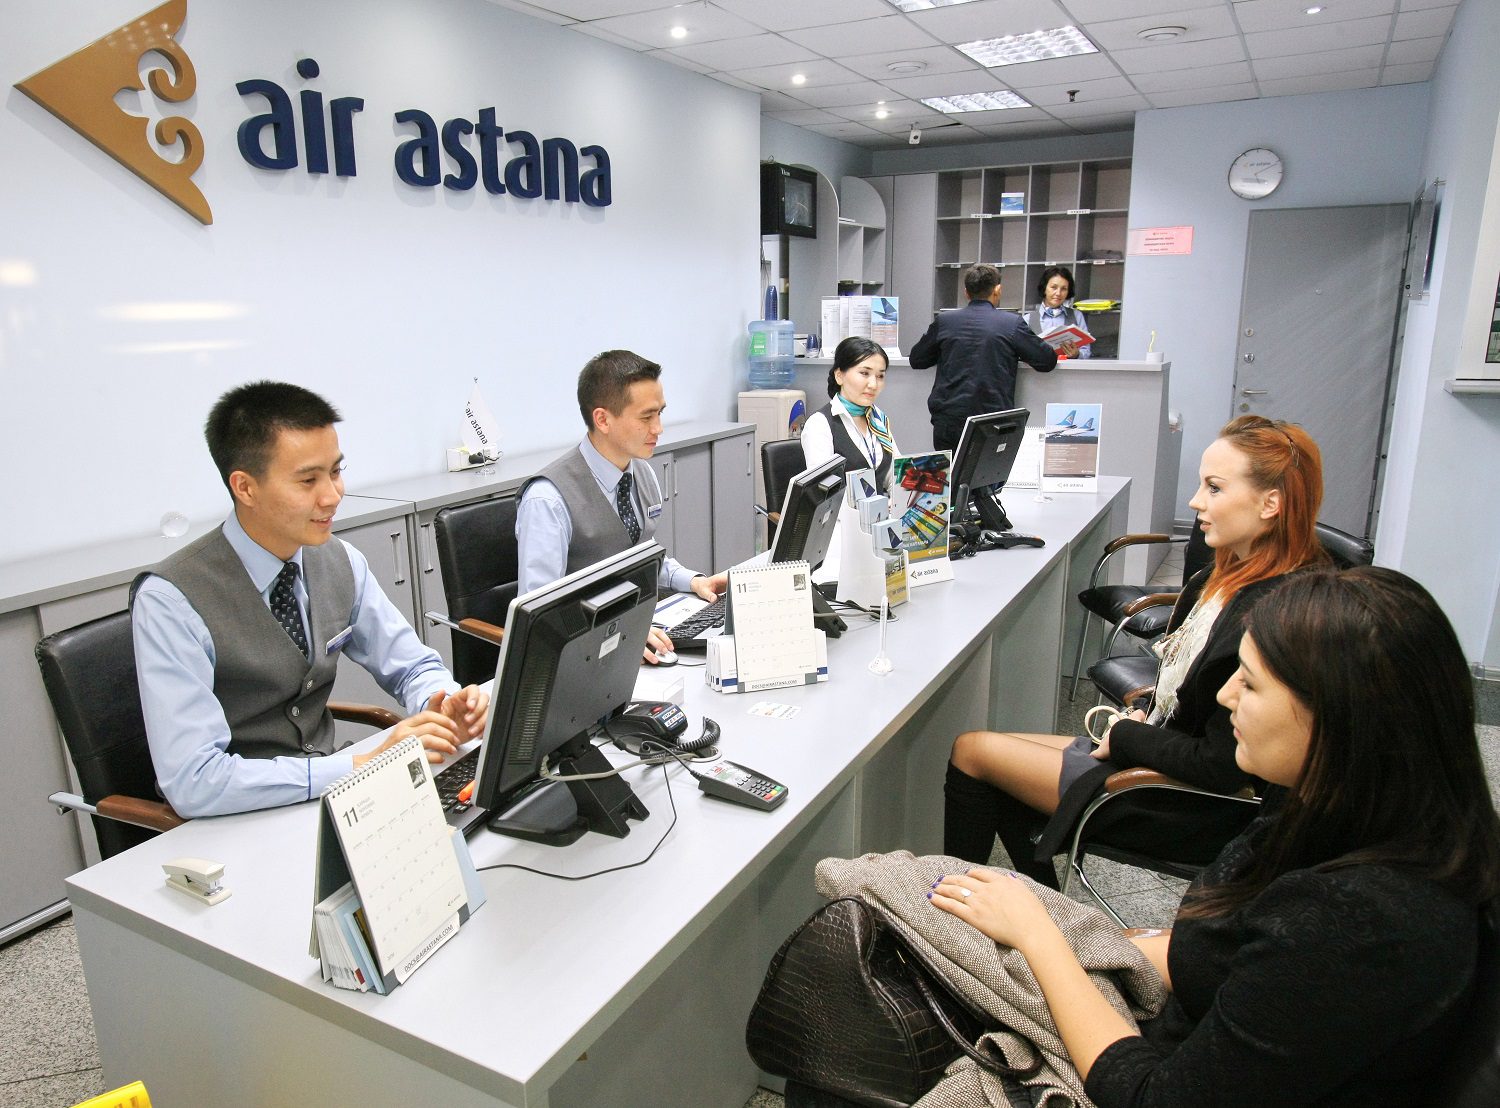 Оф аир. Эйр Астана. Компания АИР Астана. Air Astana сотрудники. Офис Air Astana здание.